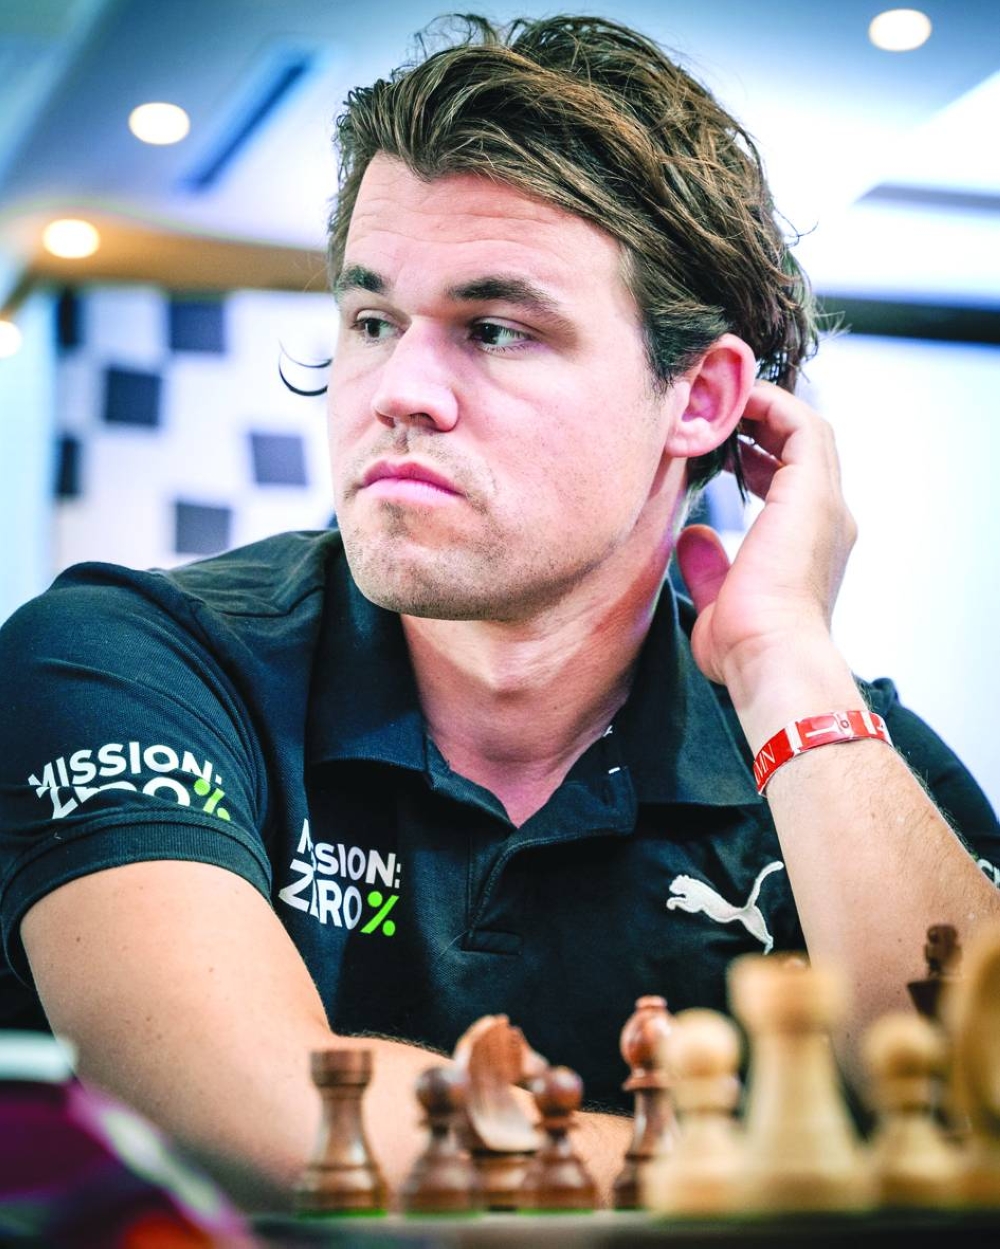 Norway Chess Blitz: Abdusattorov wins, Carlsen finishes seventh